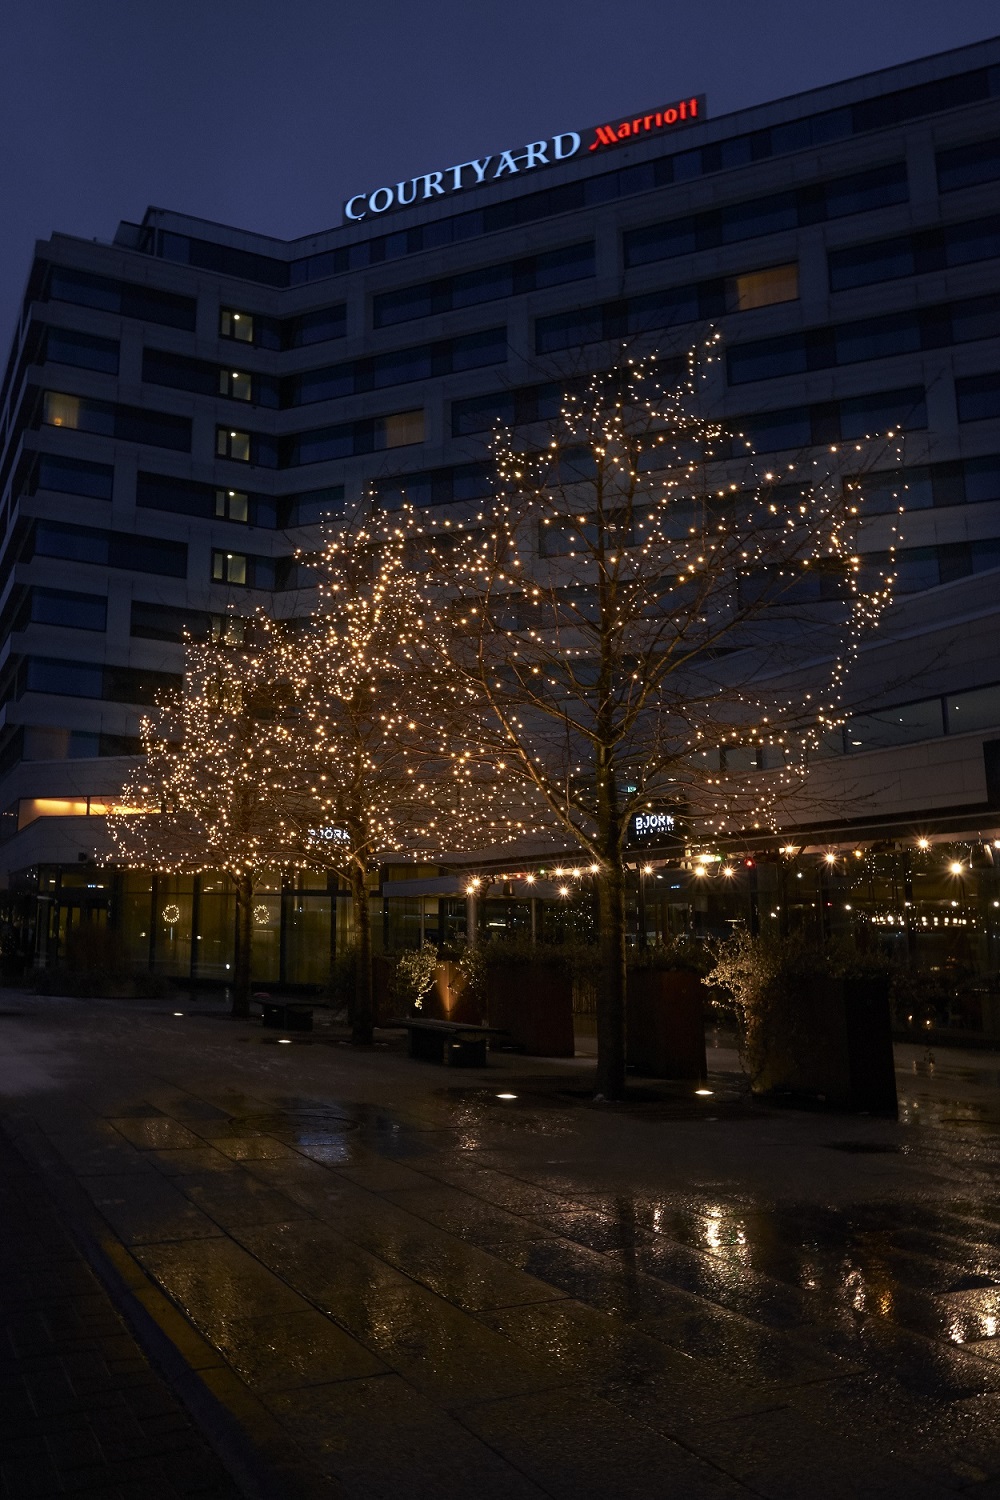 Ljusslingor med varmvita leds monterade på träd hos Marriot Courtyard Hotel.